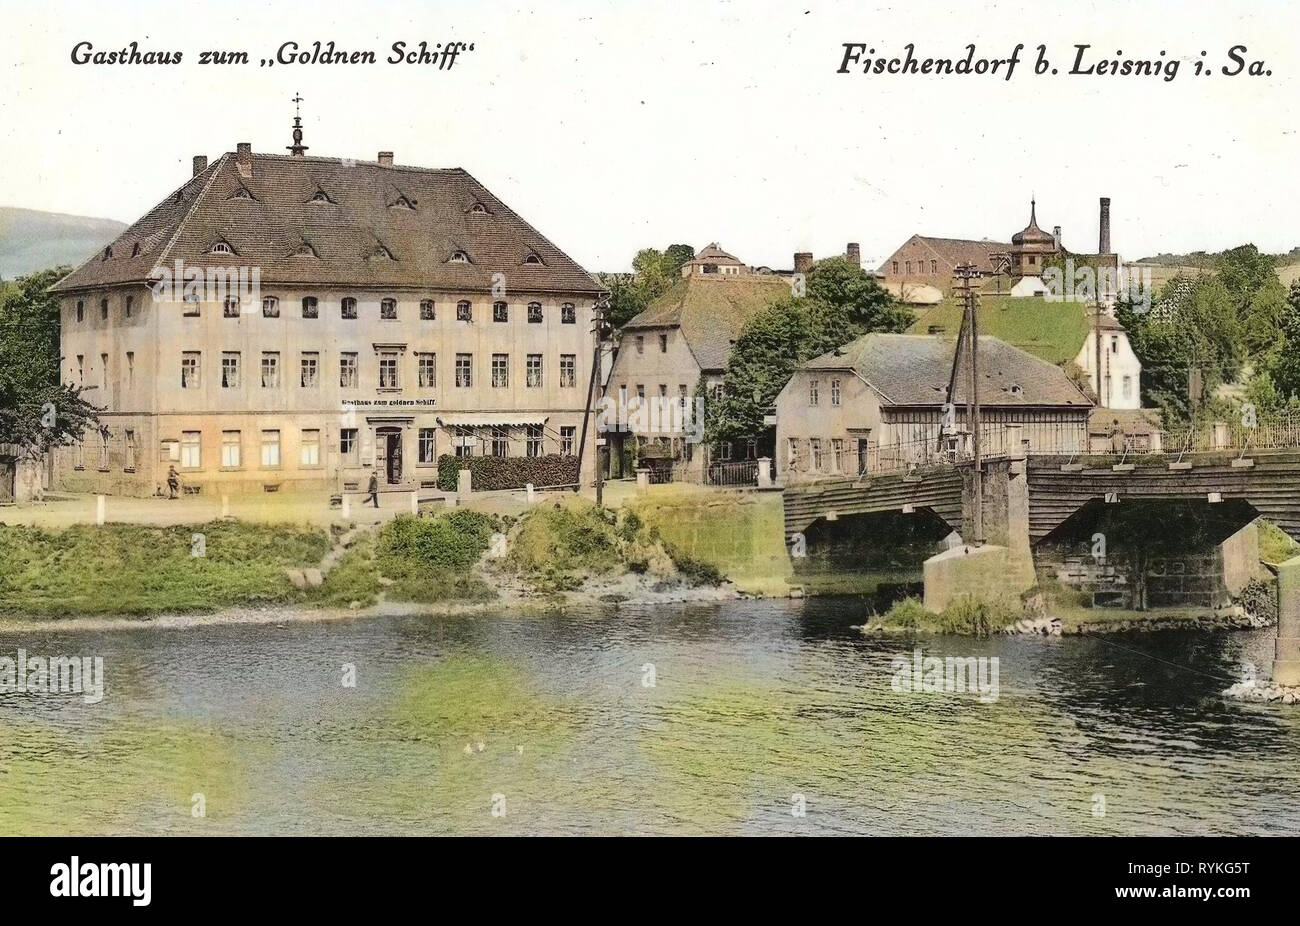 Auberges dans Landkreis Mittelsachsen, Fischendorf (Leisnig), 1915, Landkreis Mittelsachsen, Fischendorf, Gasthaus Zum goldnen Schiff, Allemagne Banque D'Images